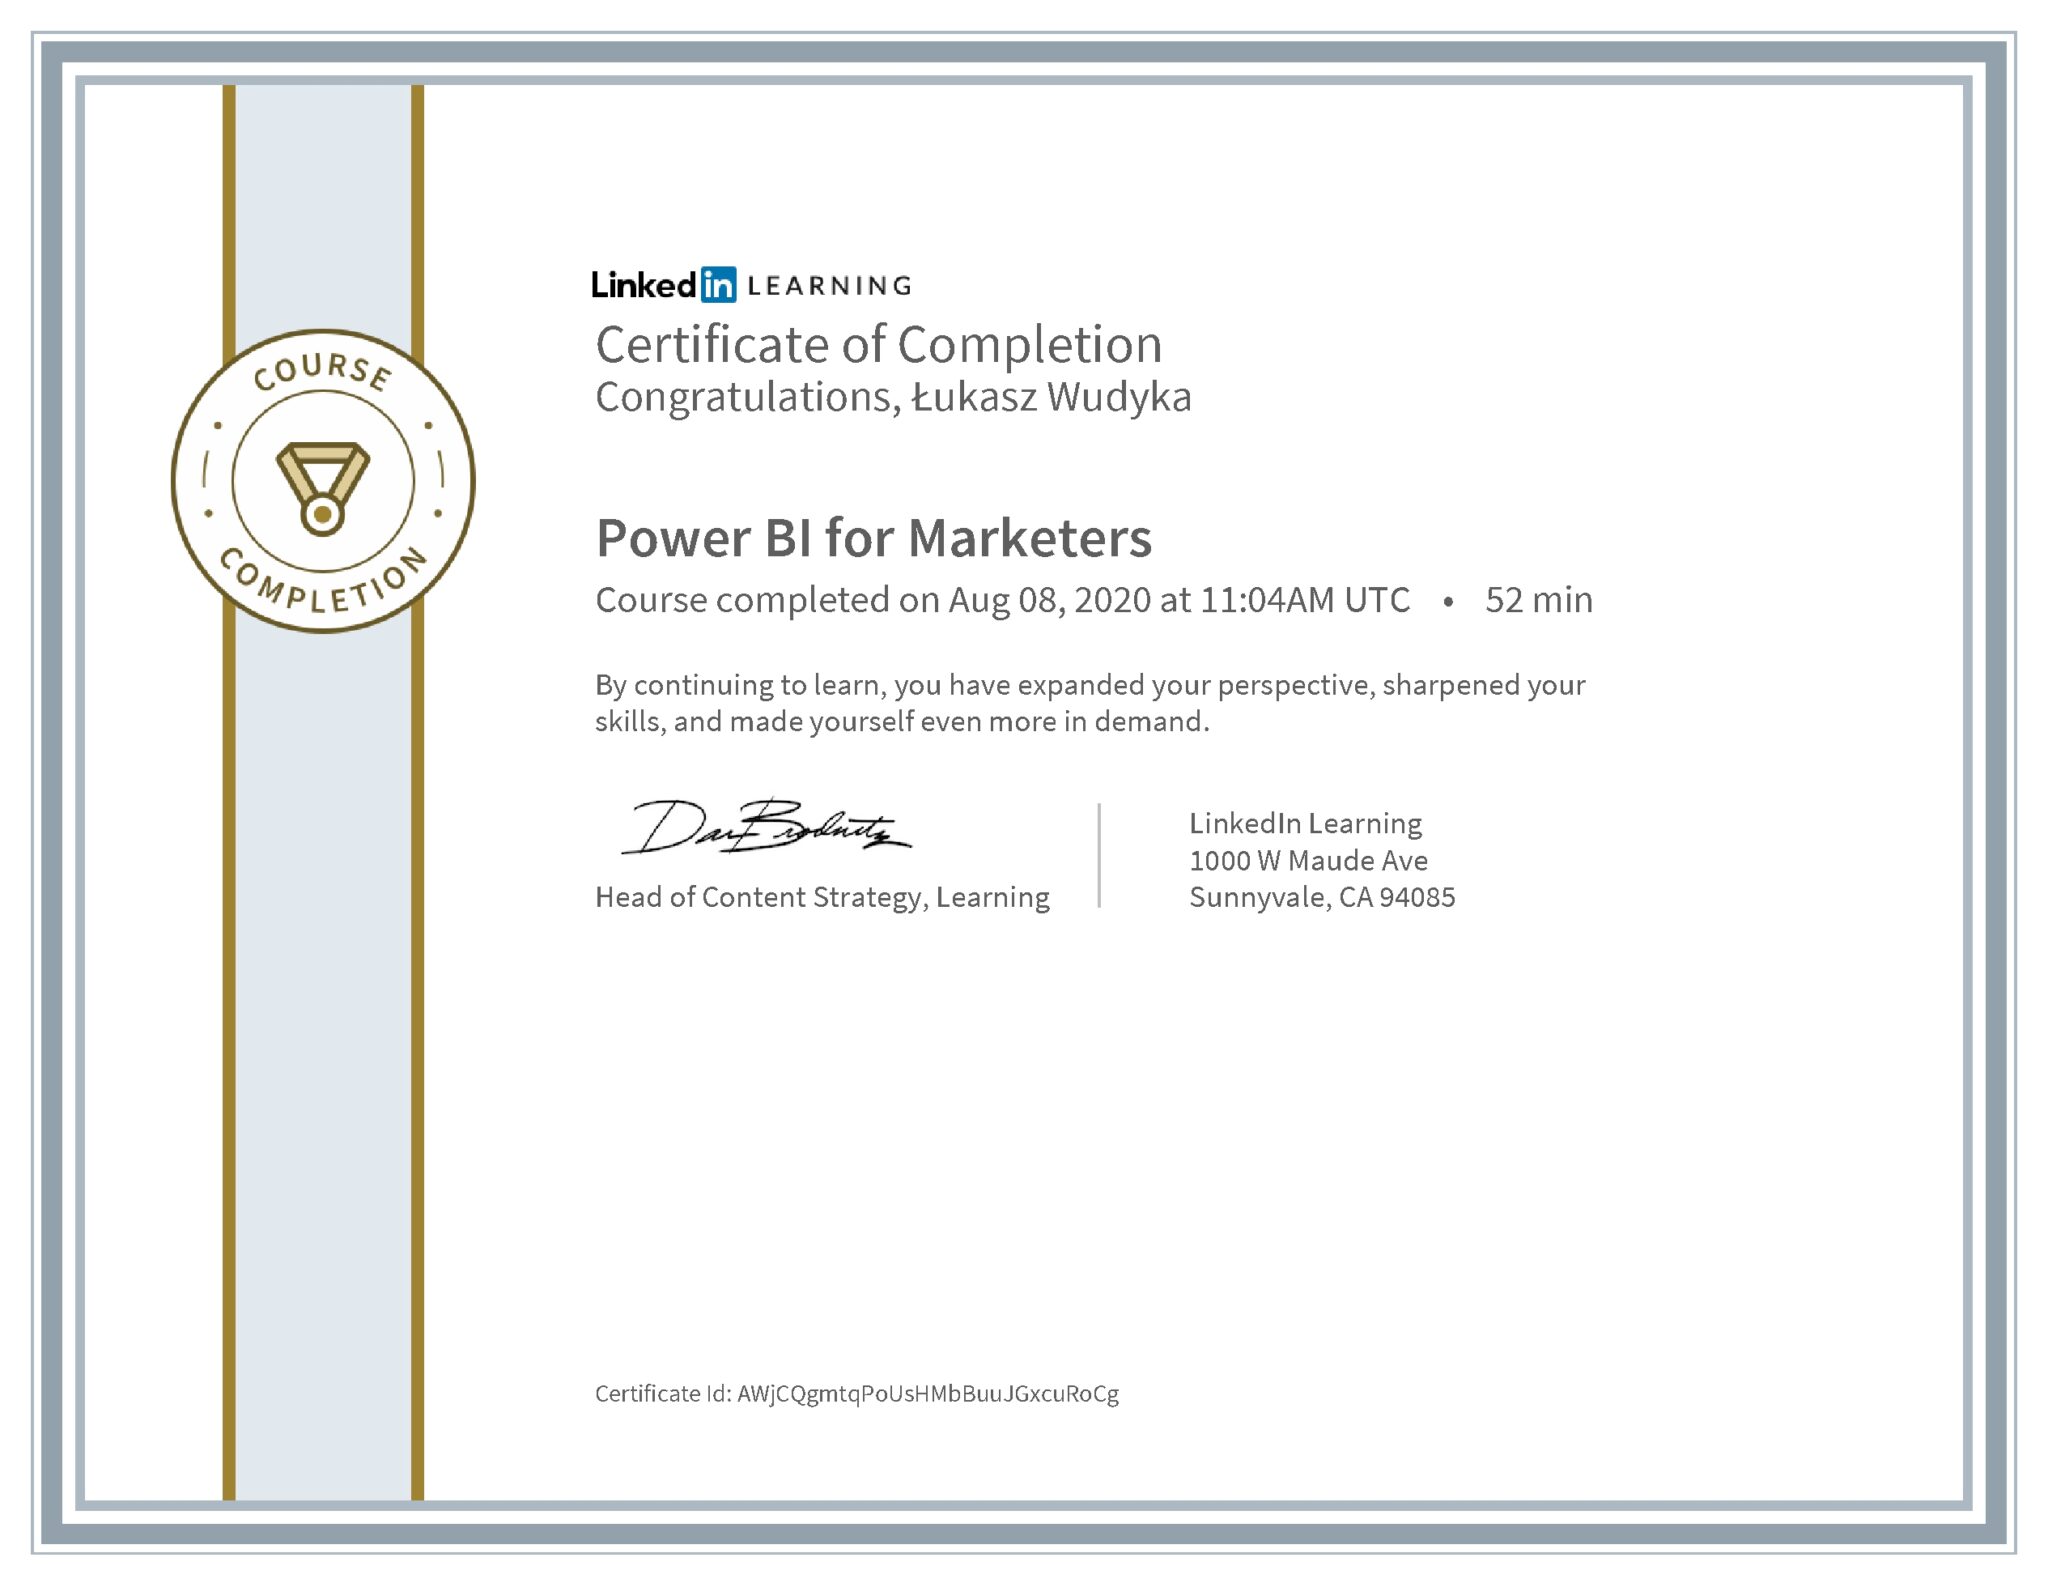 Łukasz Wudyka certyfikat LinkedIn Power BI for Marketers